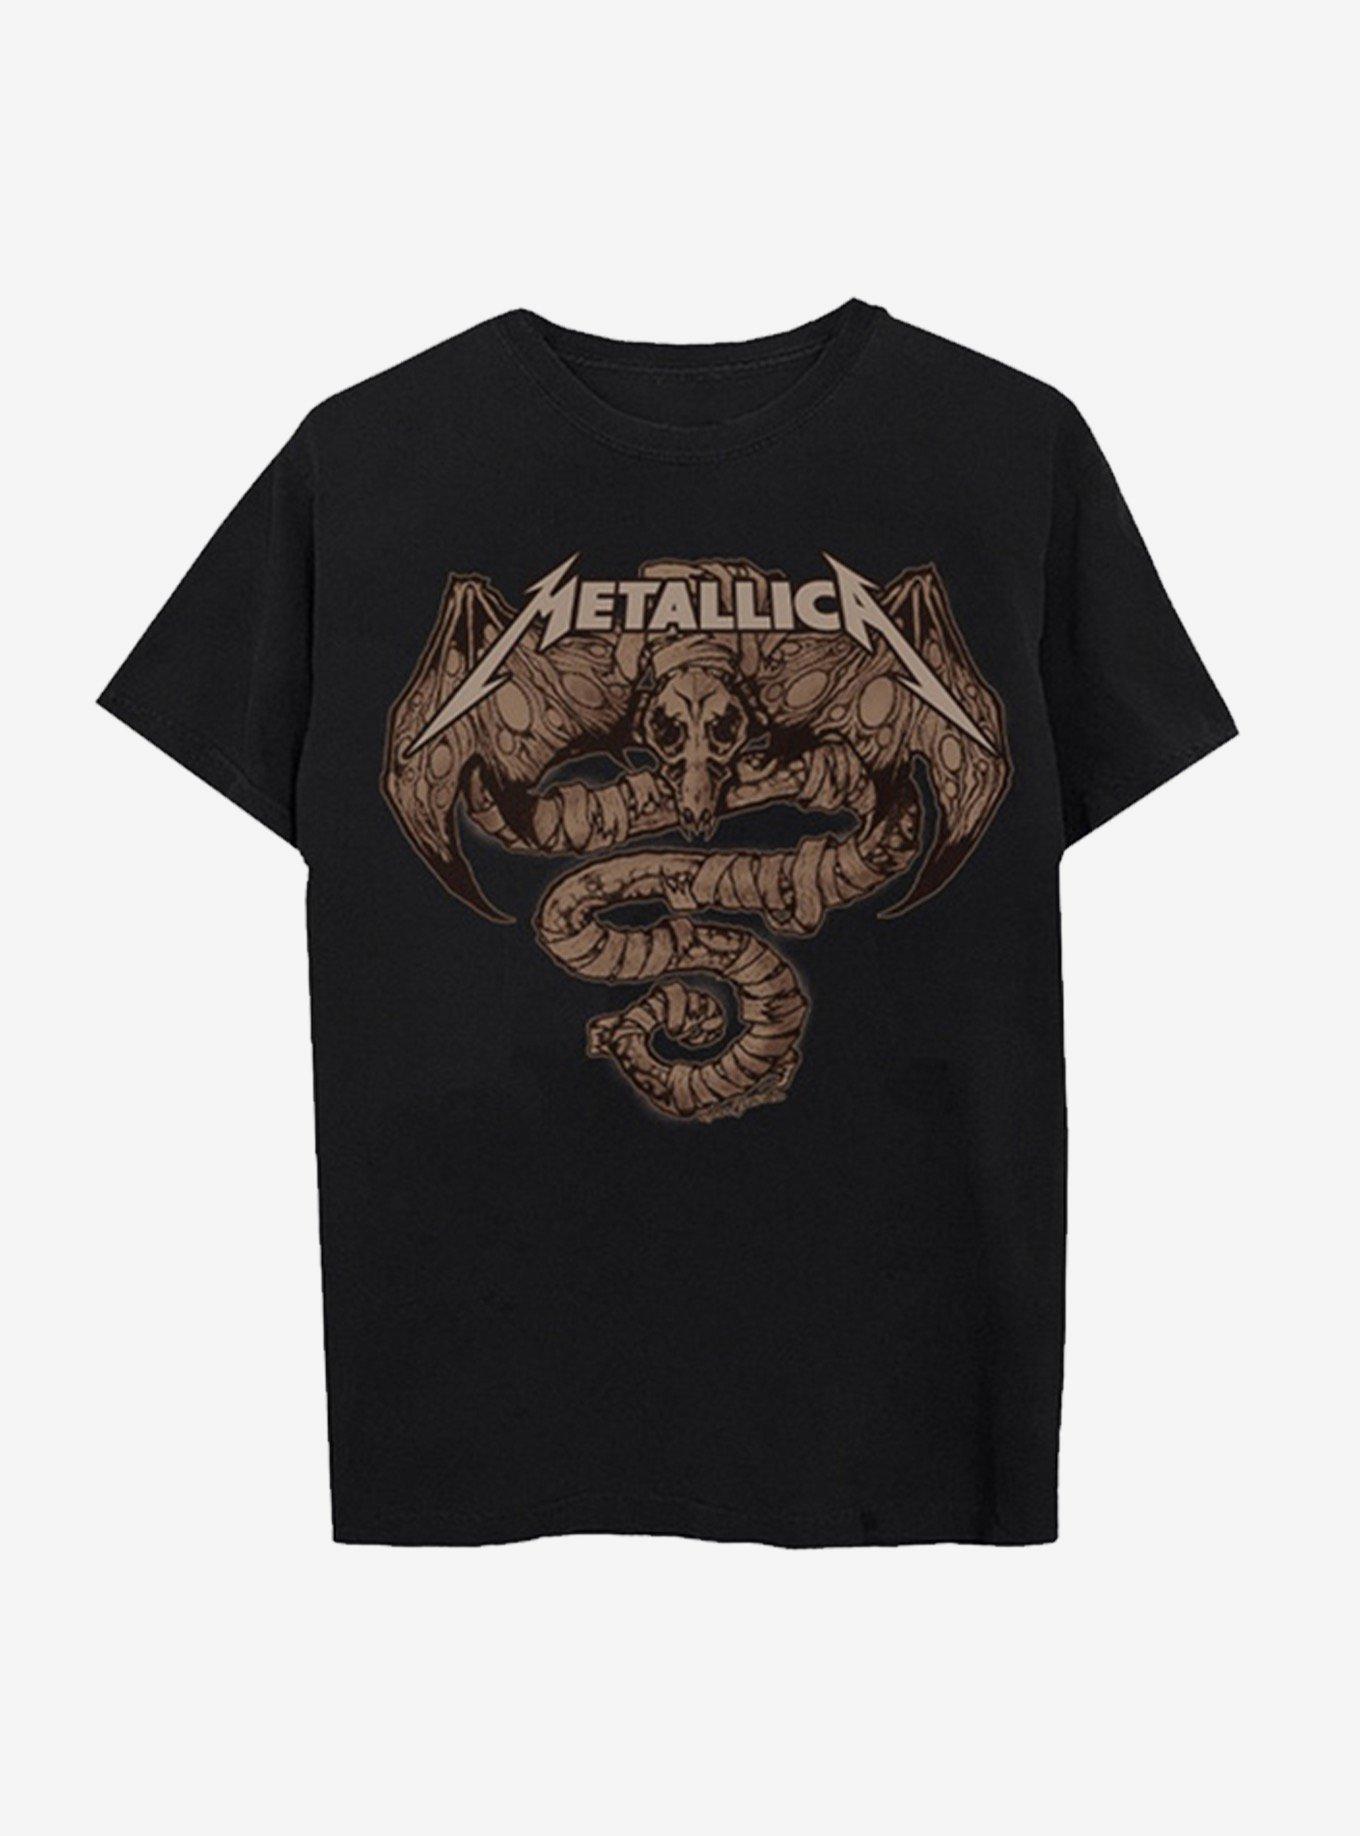 Metallica Roam T-Shirt, BLACK, hi-res